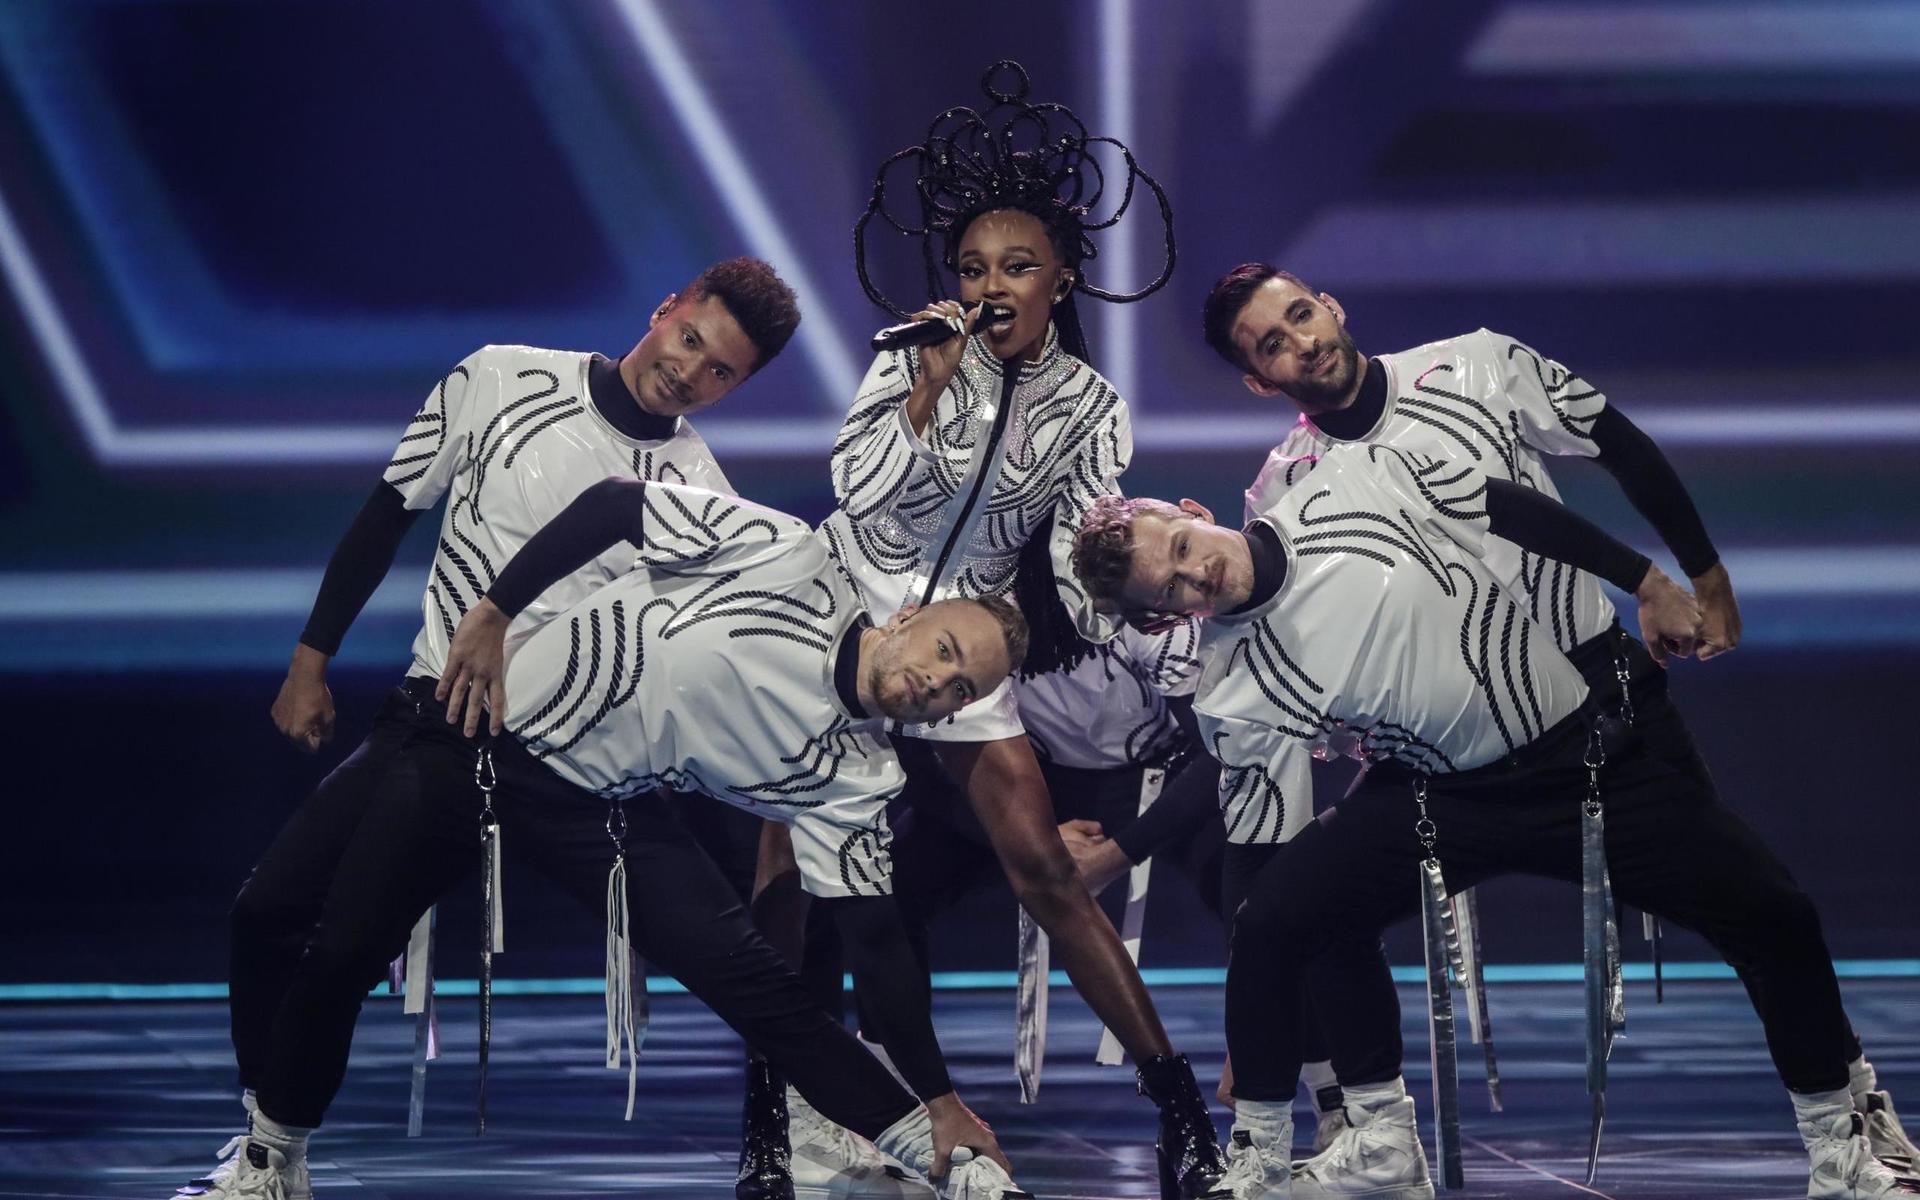 Samtidigt som konflikten pågår med Palestina tävlar Israel i Eurovision. Med startnummer tolv framträdde Eden Alene med bidraget ”Set Me Free”.